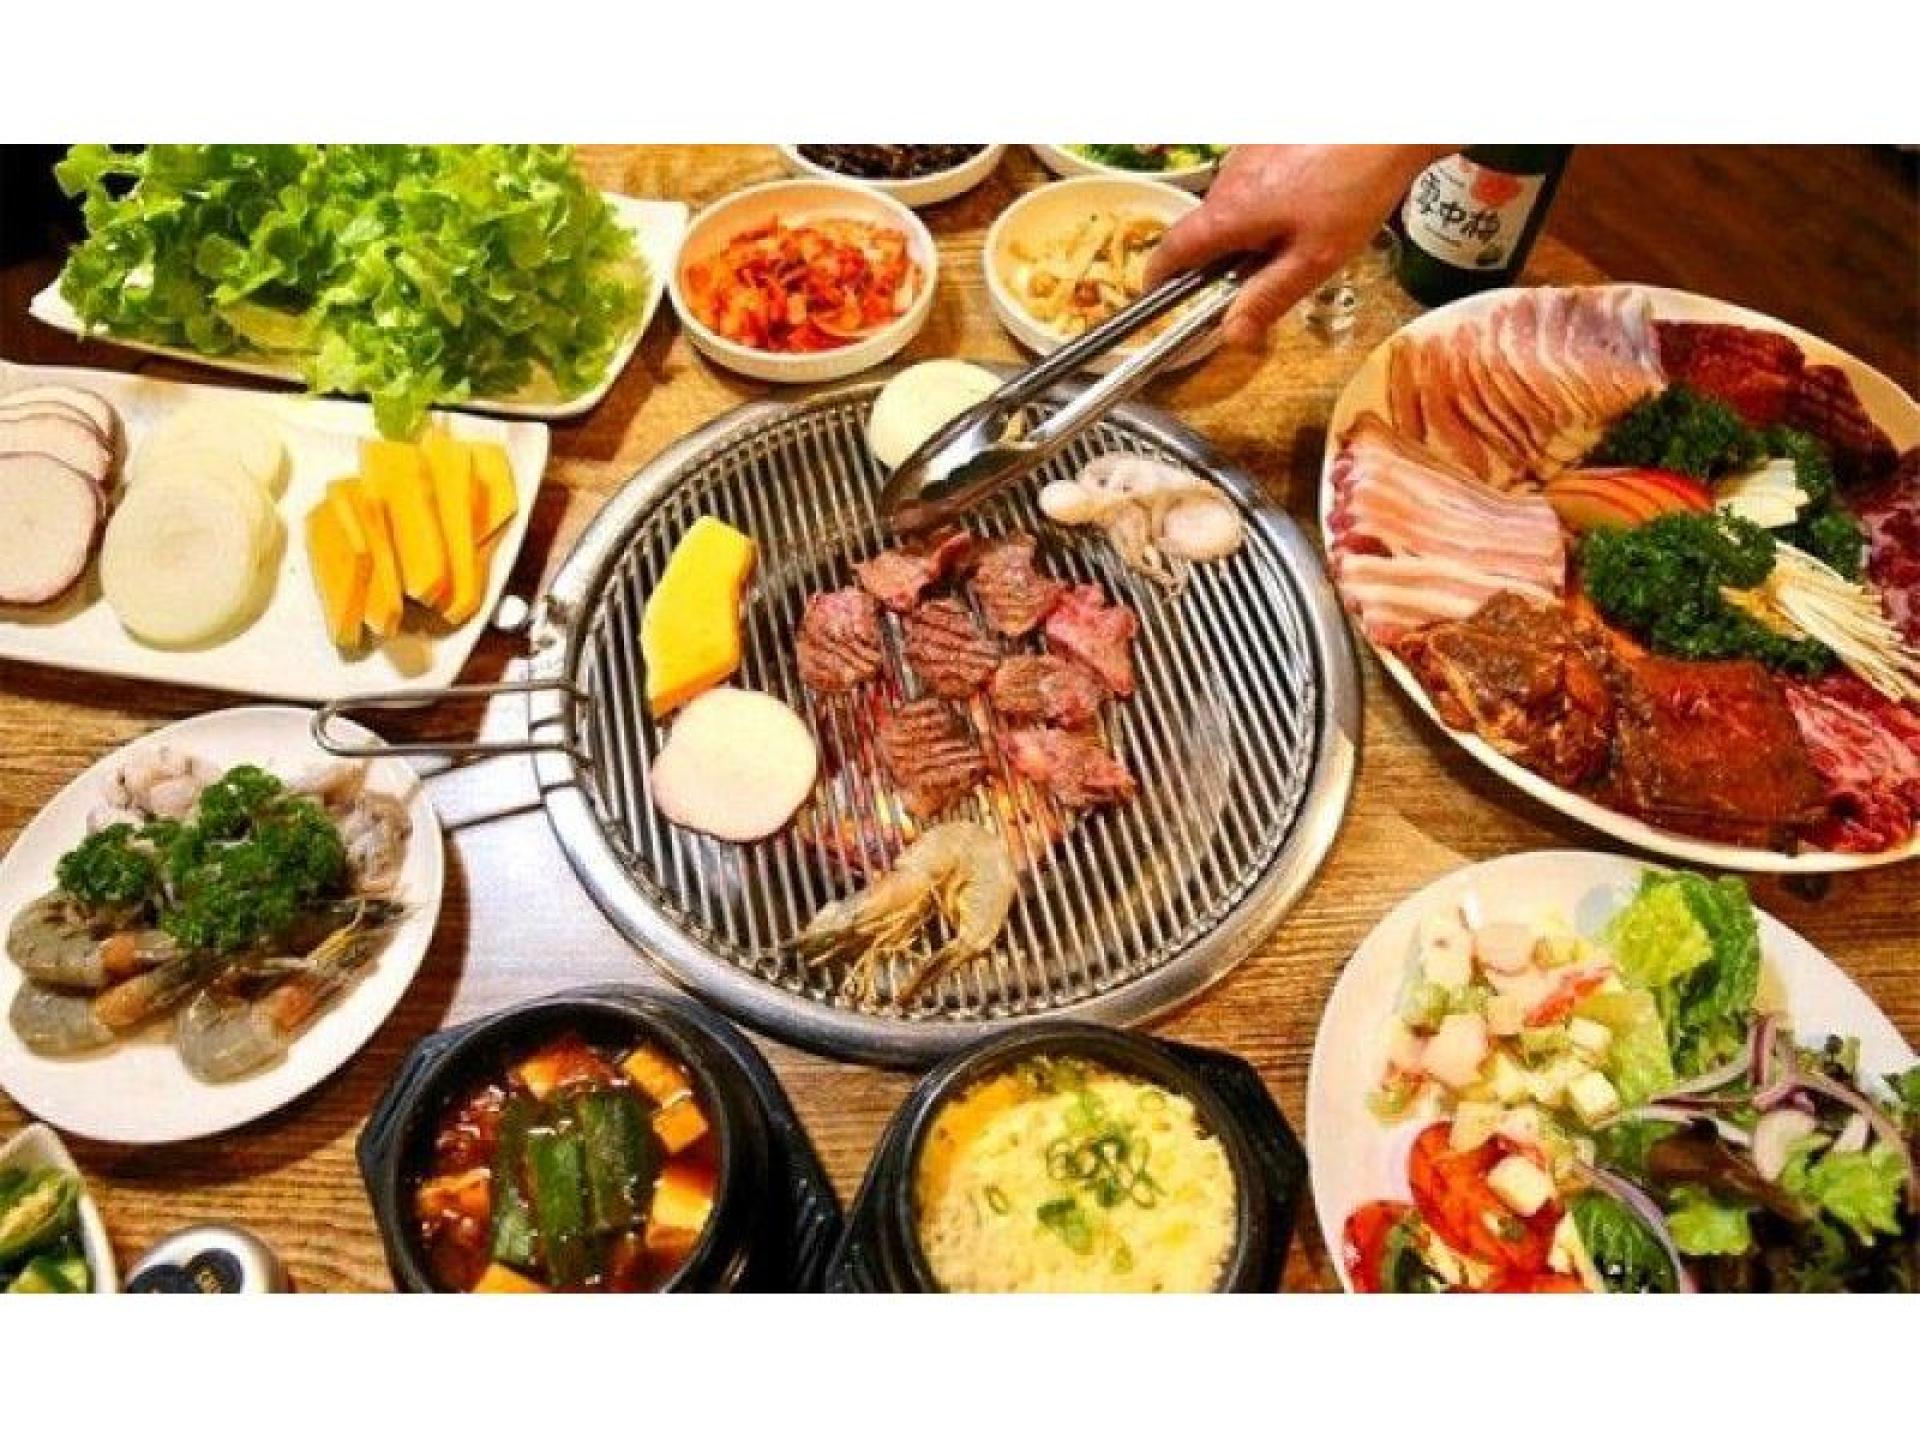 Kogi korean bbq & seafood hot pot